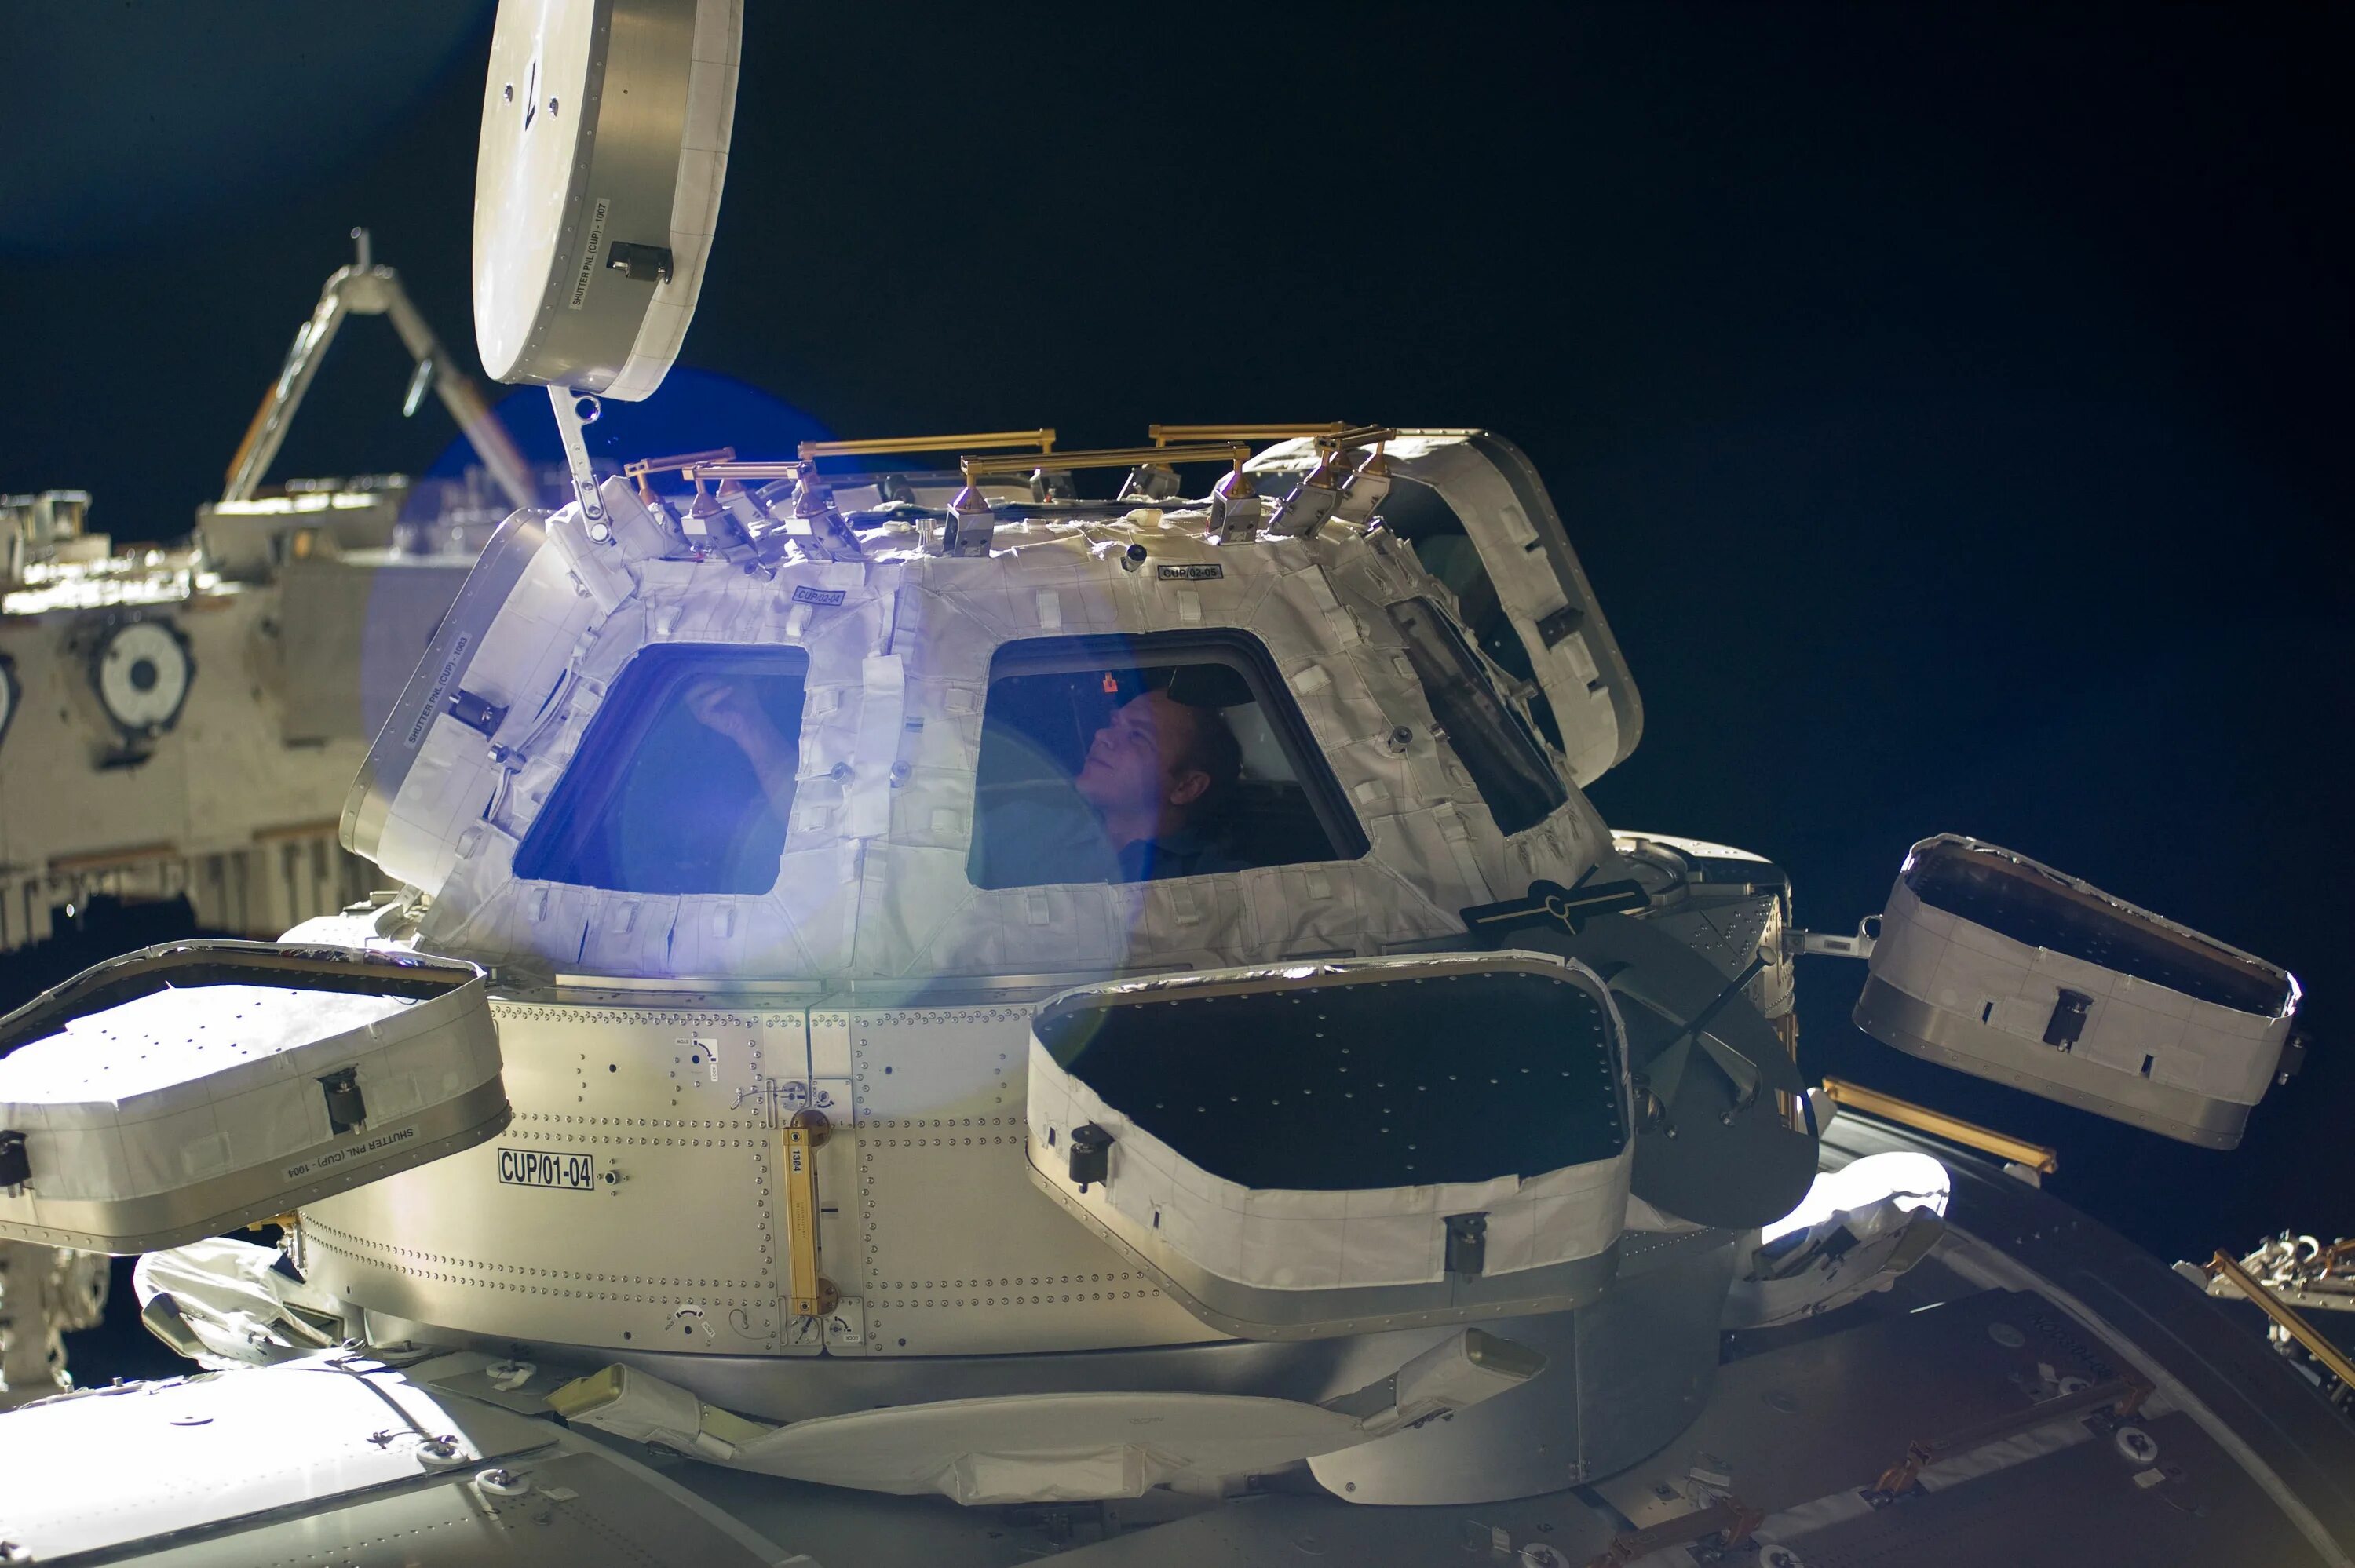 Модуль МКС «купол» (Cupola). Модель космической станции. Окно шаттла. Космический шаттл окно.